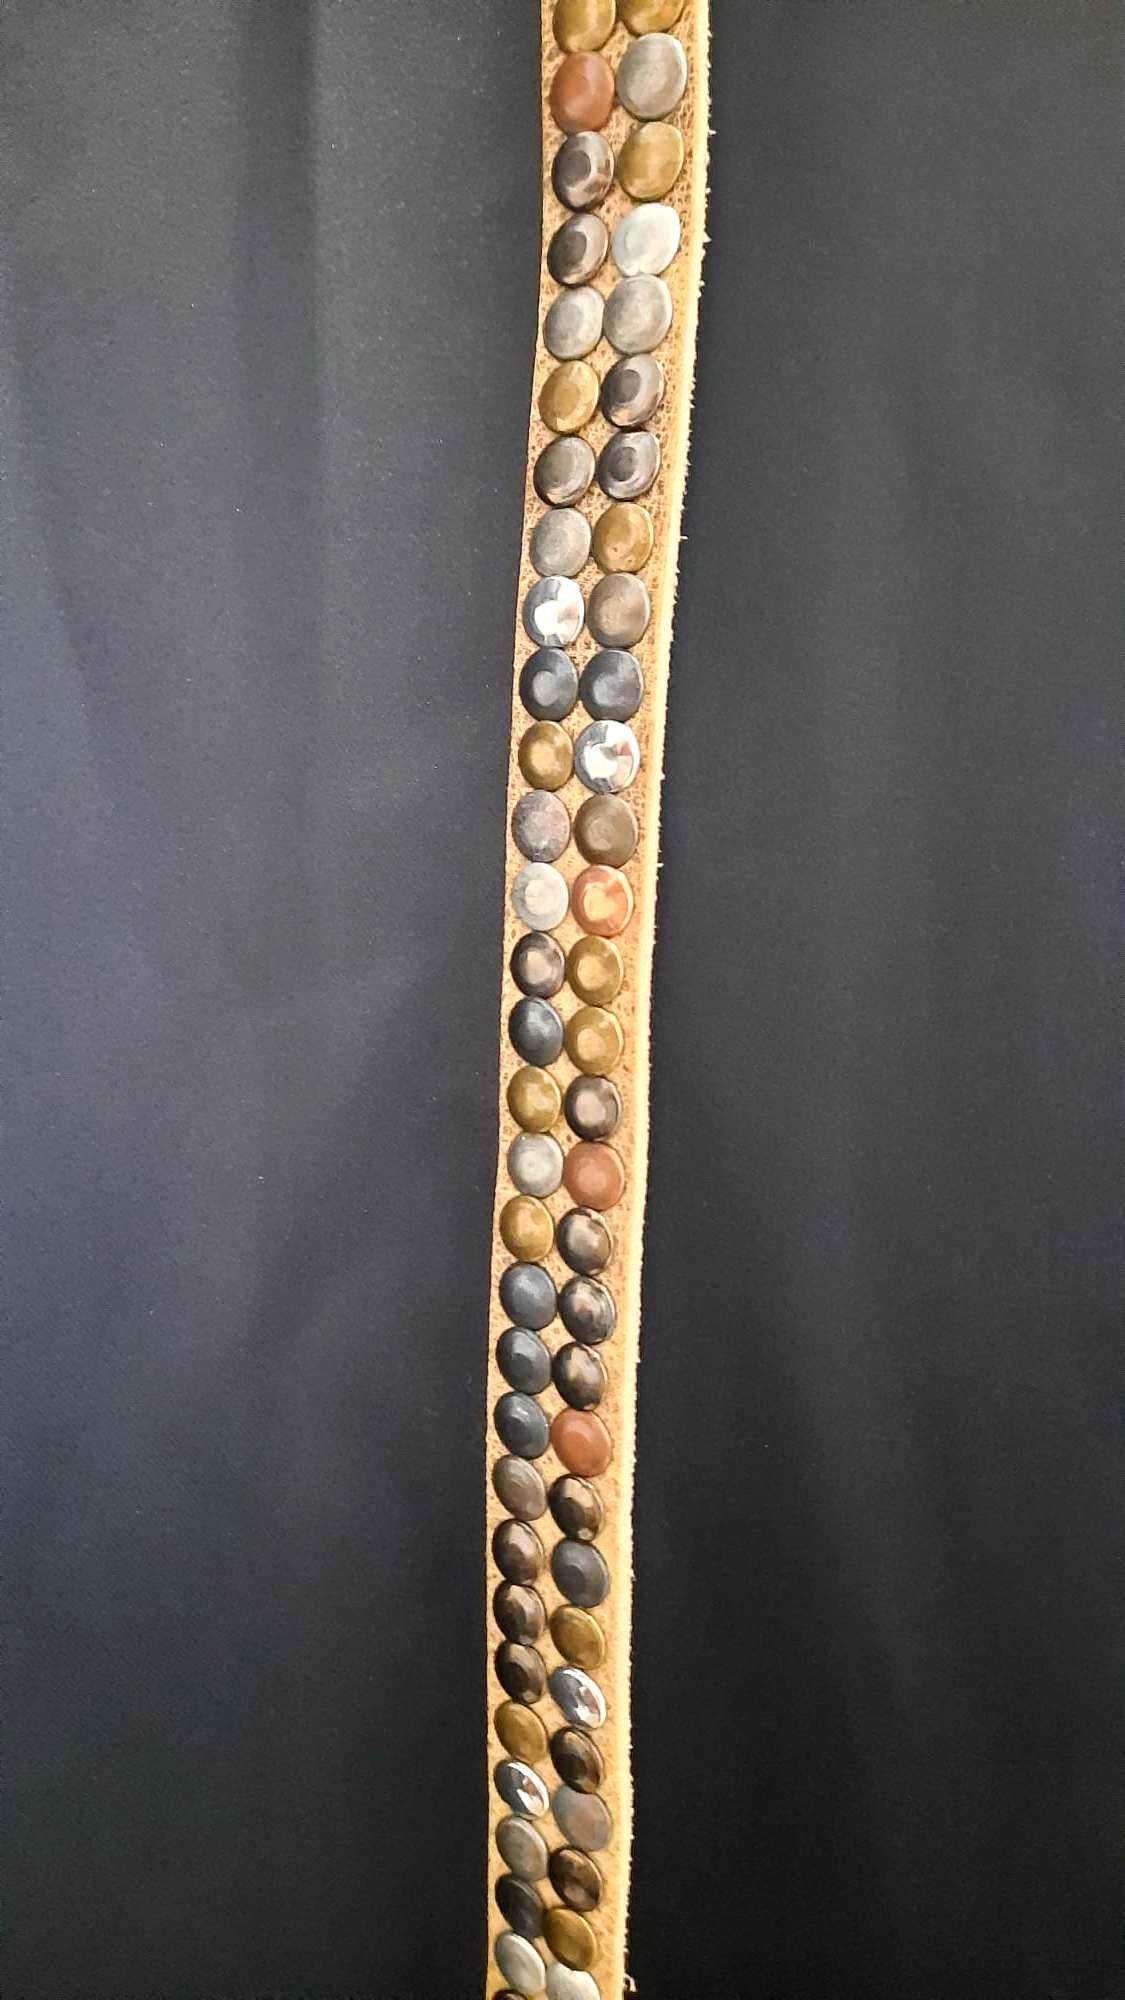 Nowy pasek – Tara, 120 cm, styl nabijany pinezkami